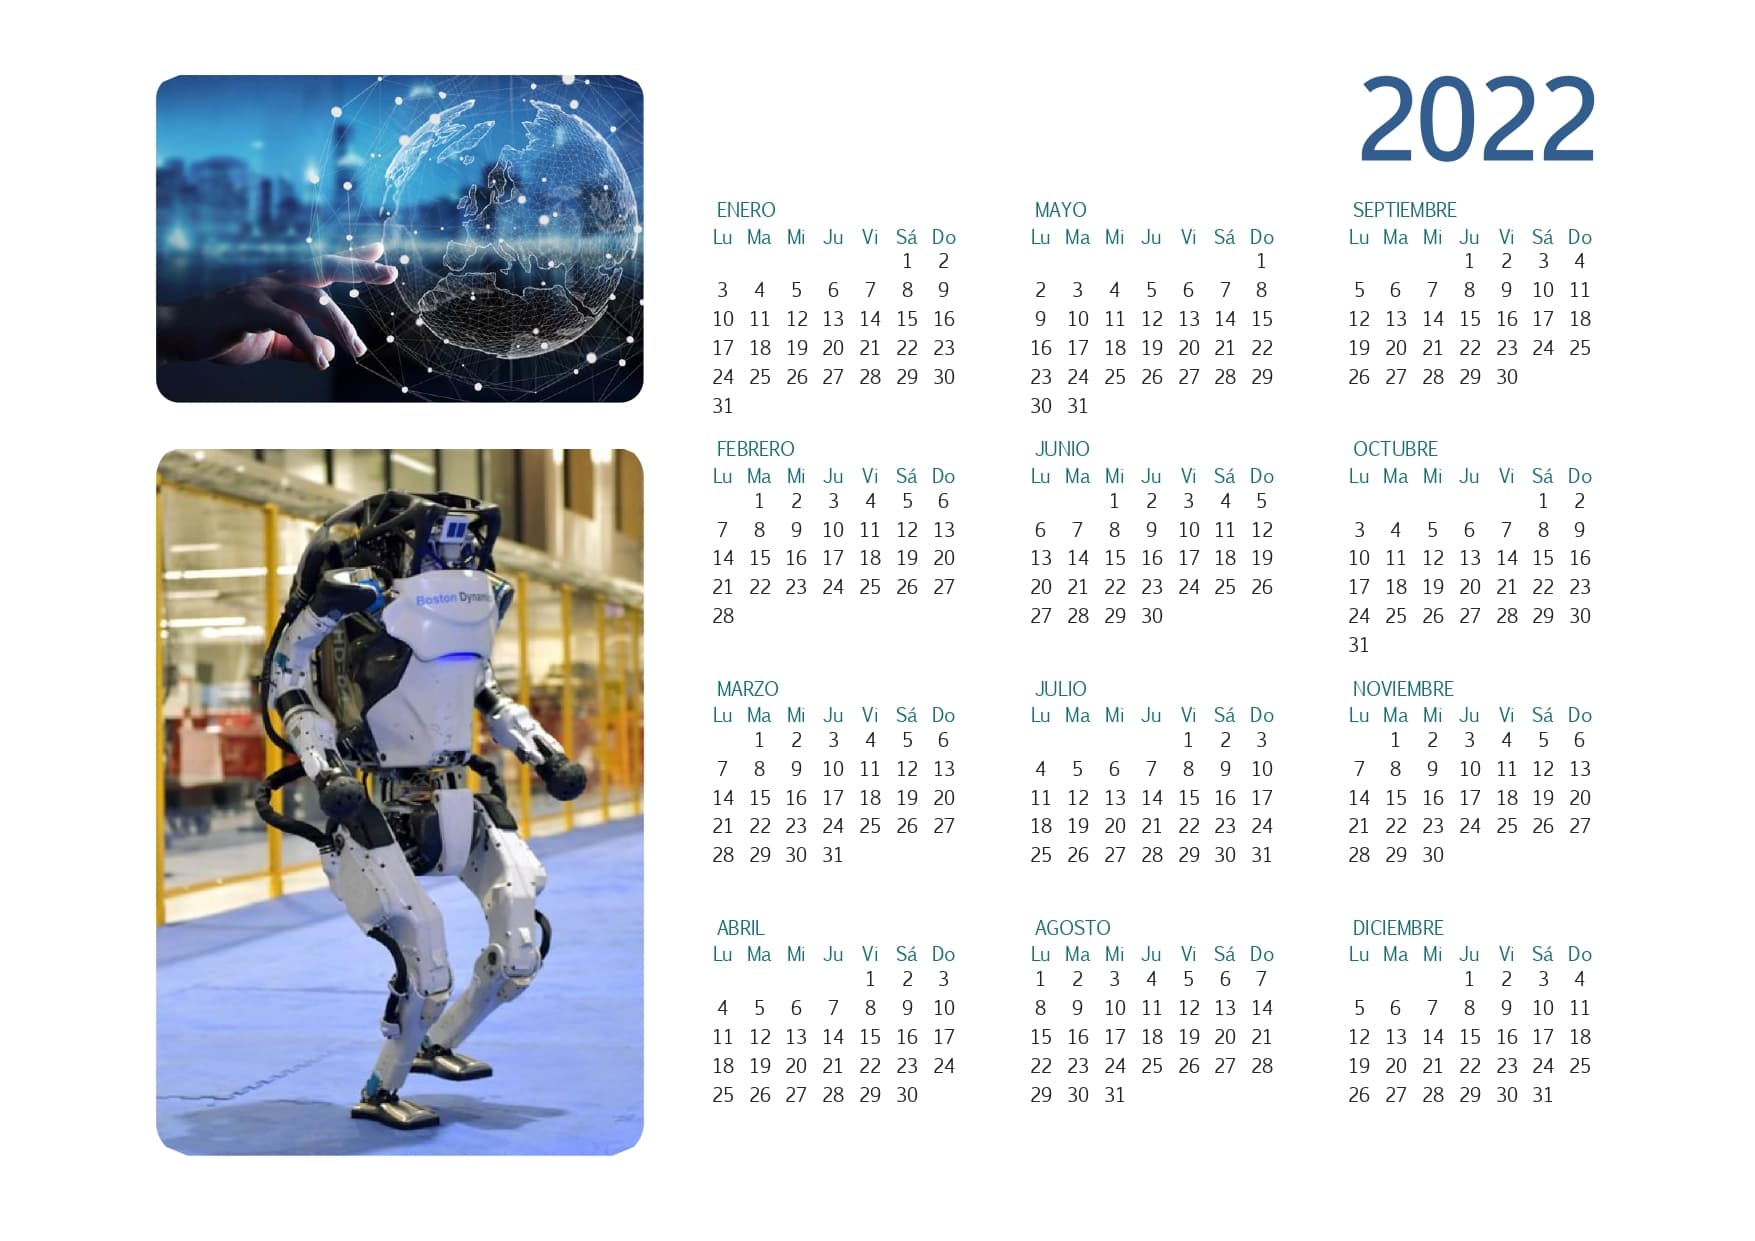 calendario 2022 completo con todos los meses